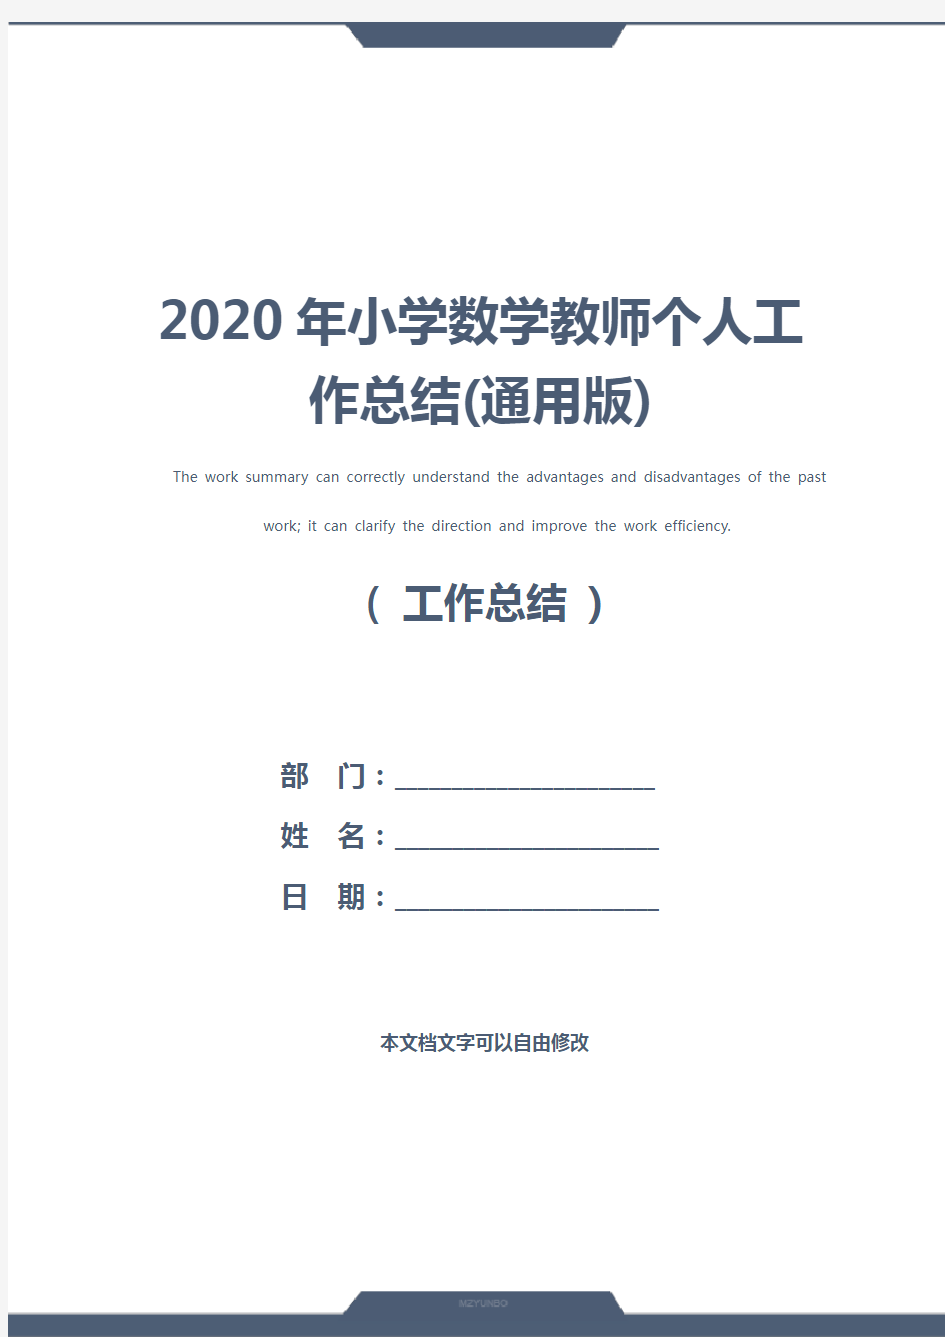 2020年小学数学教师个人工作总结(通用版)